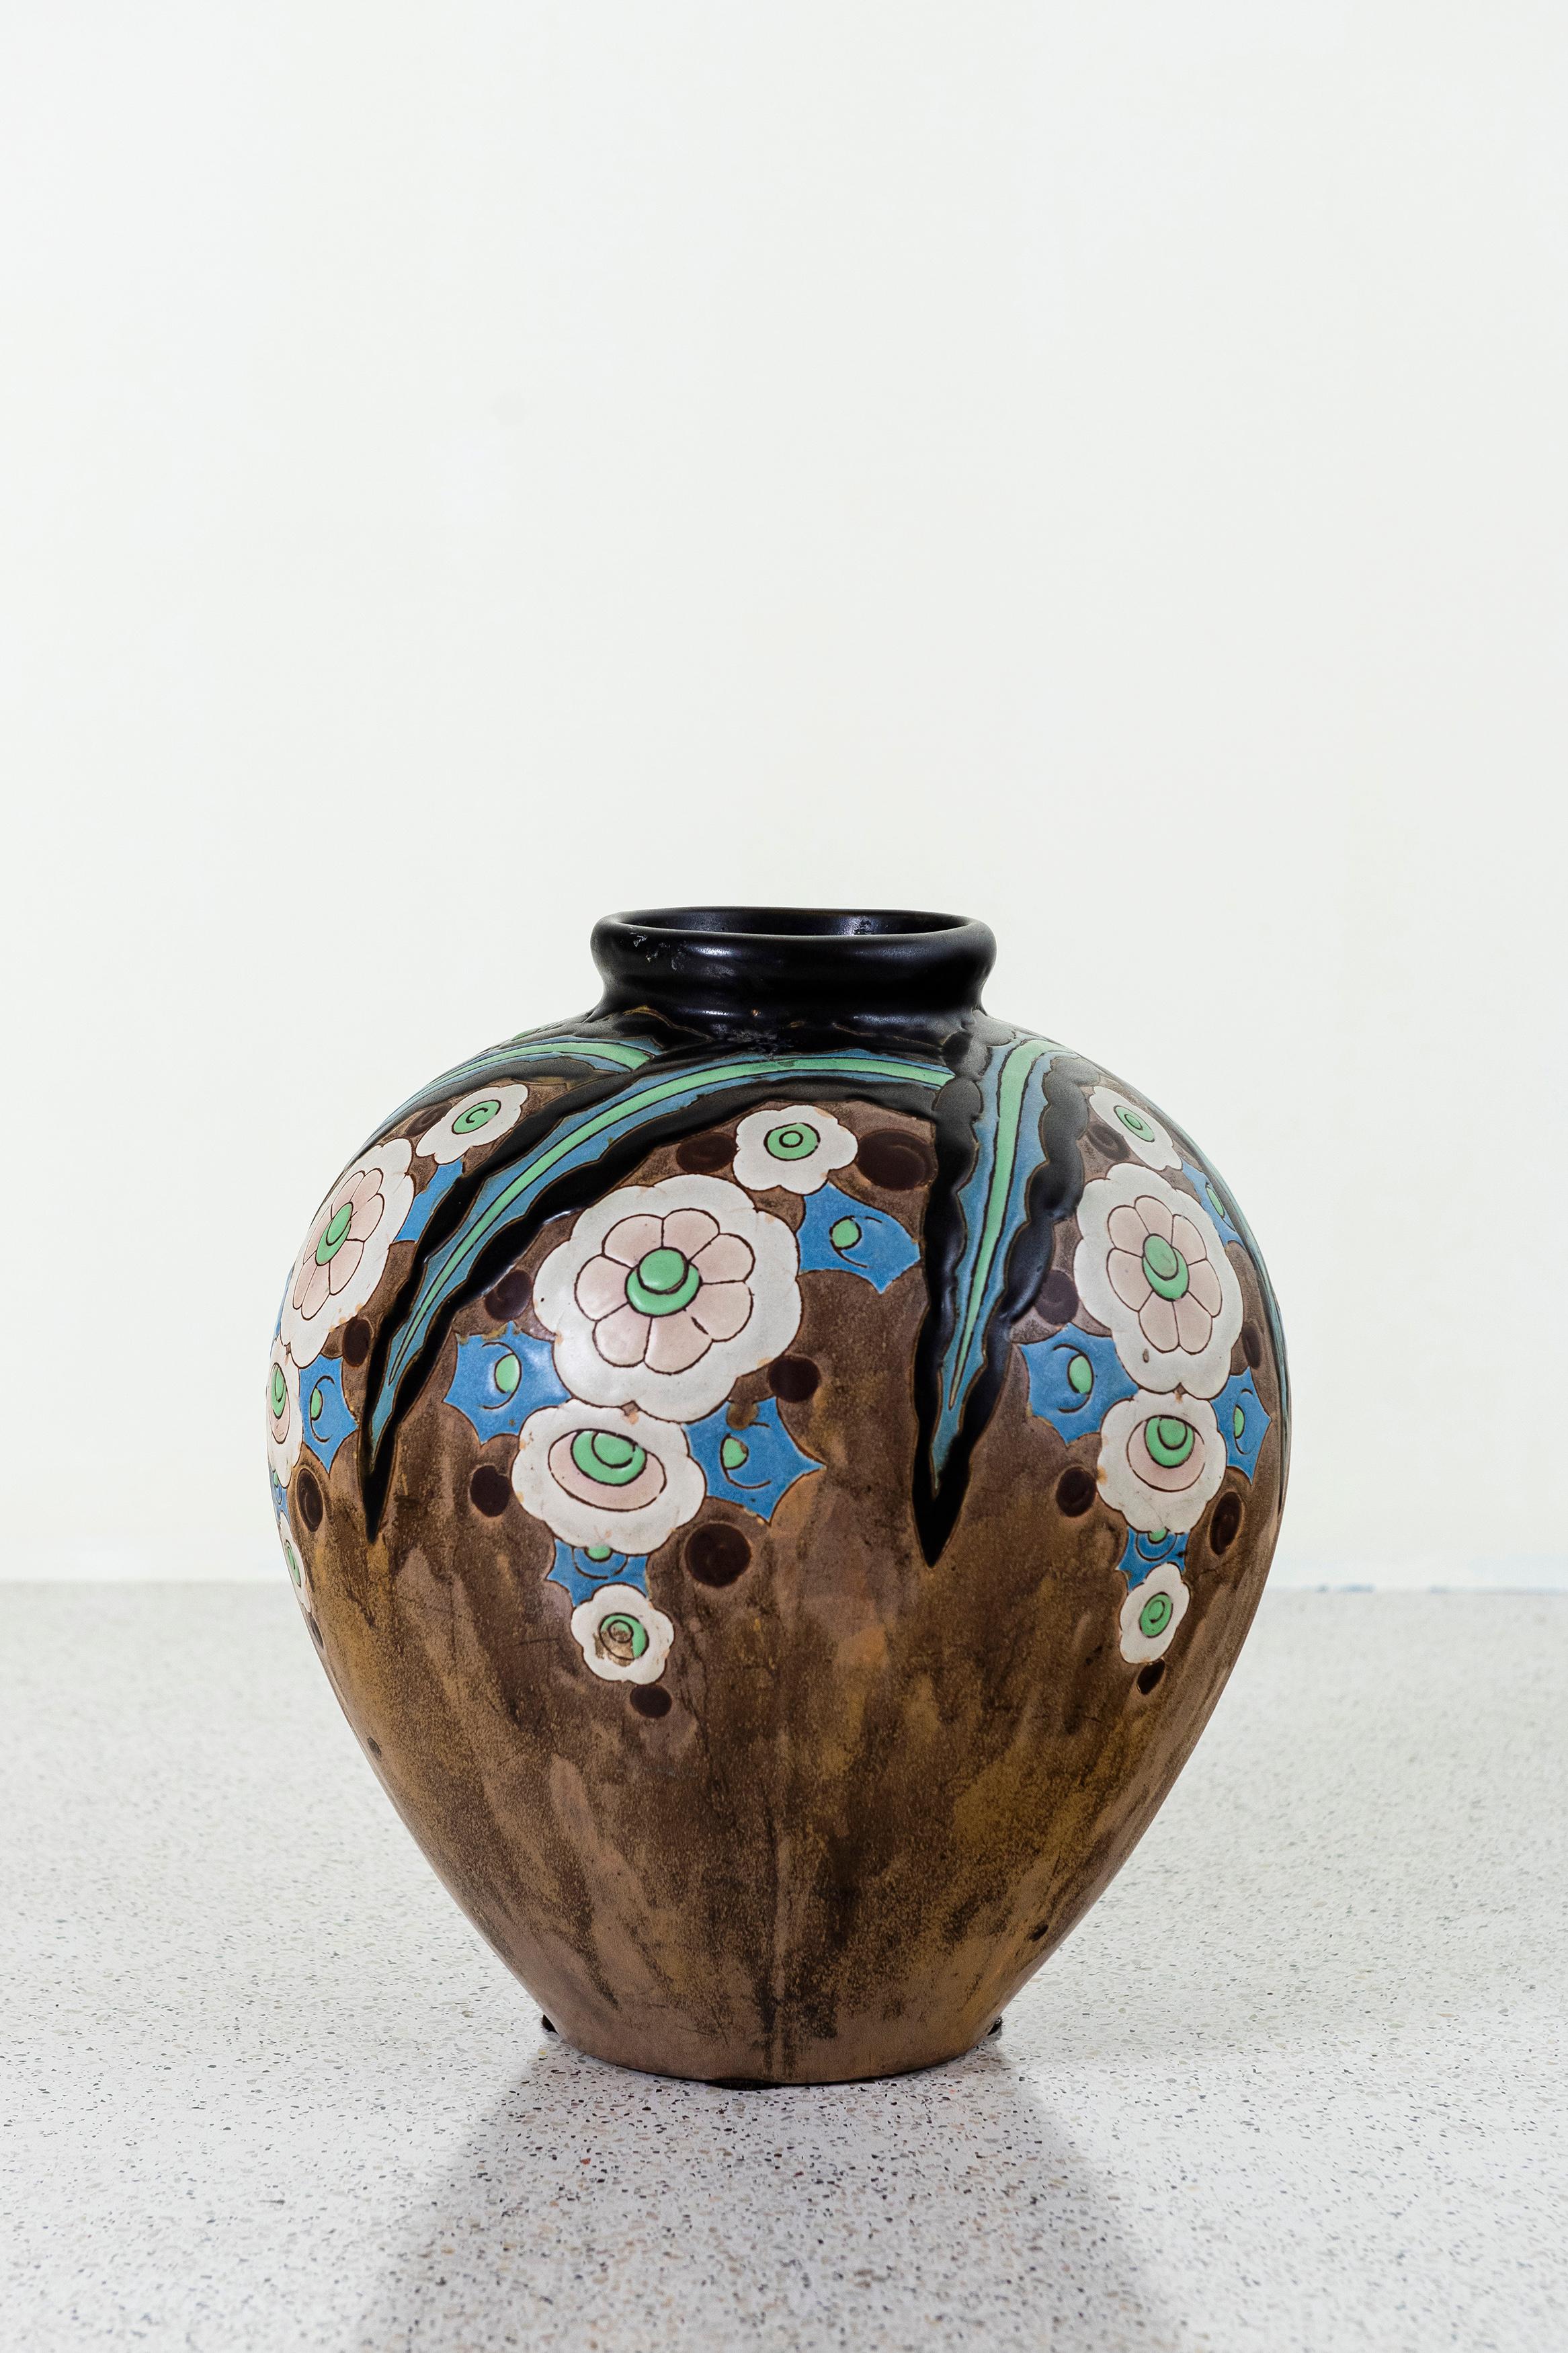 Vase à fleurs Gres Keramis, Belgique, vers 1920.
Modèle D 1211.